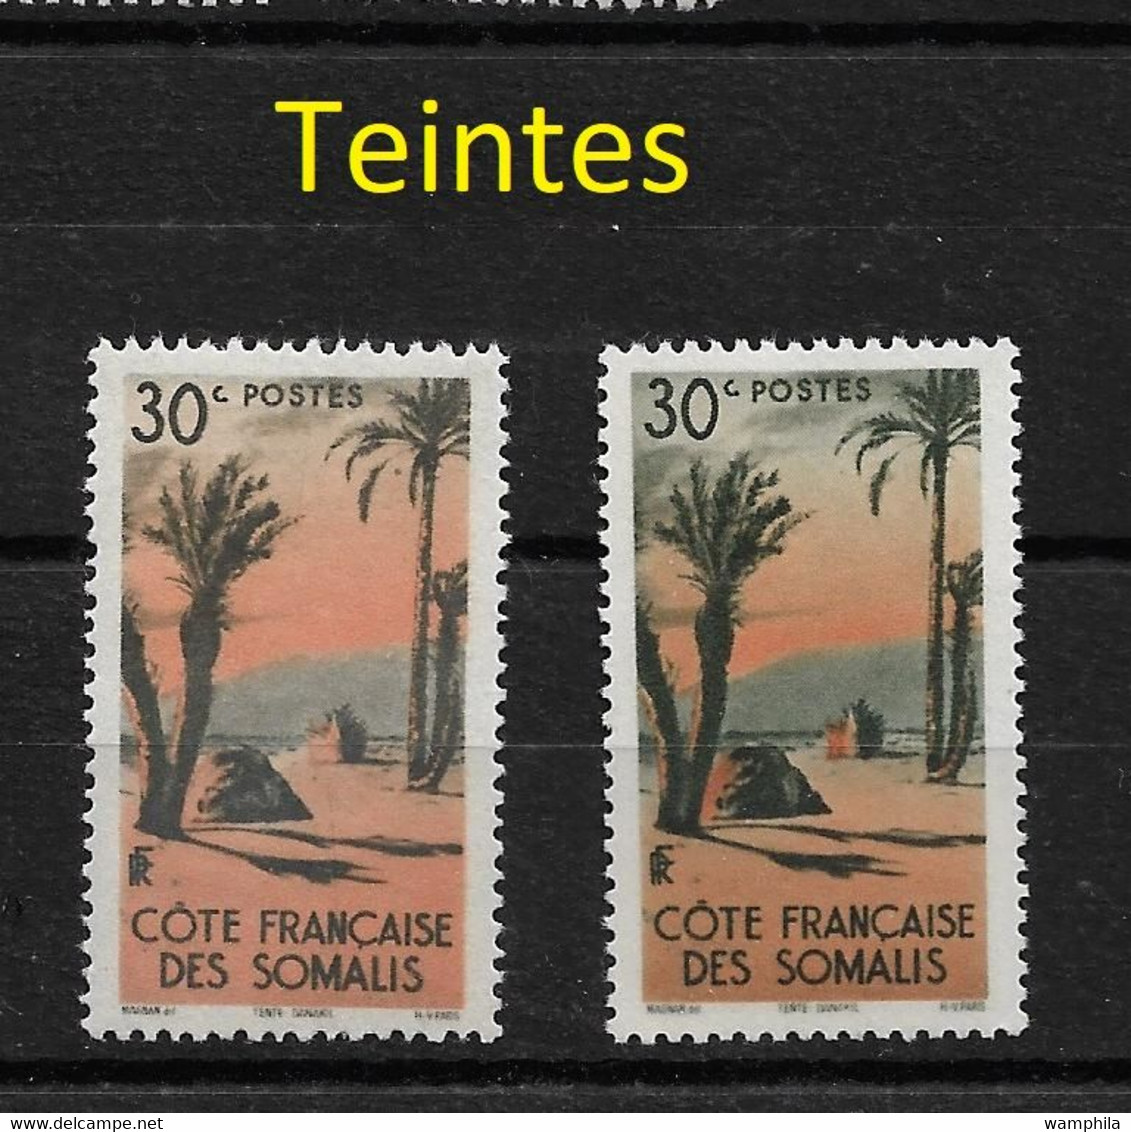 Un lot de 61 timbres avec des variétés de couleurs, de différents pays et régions.